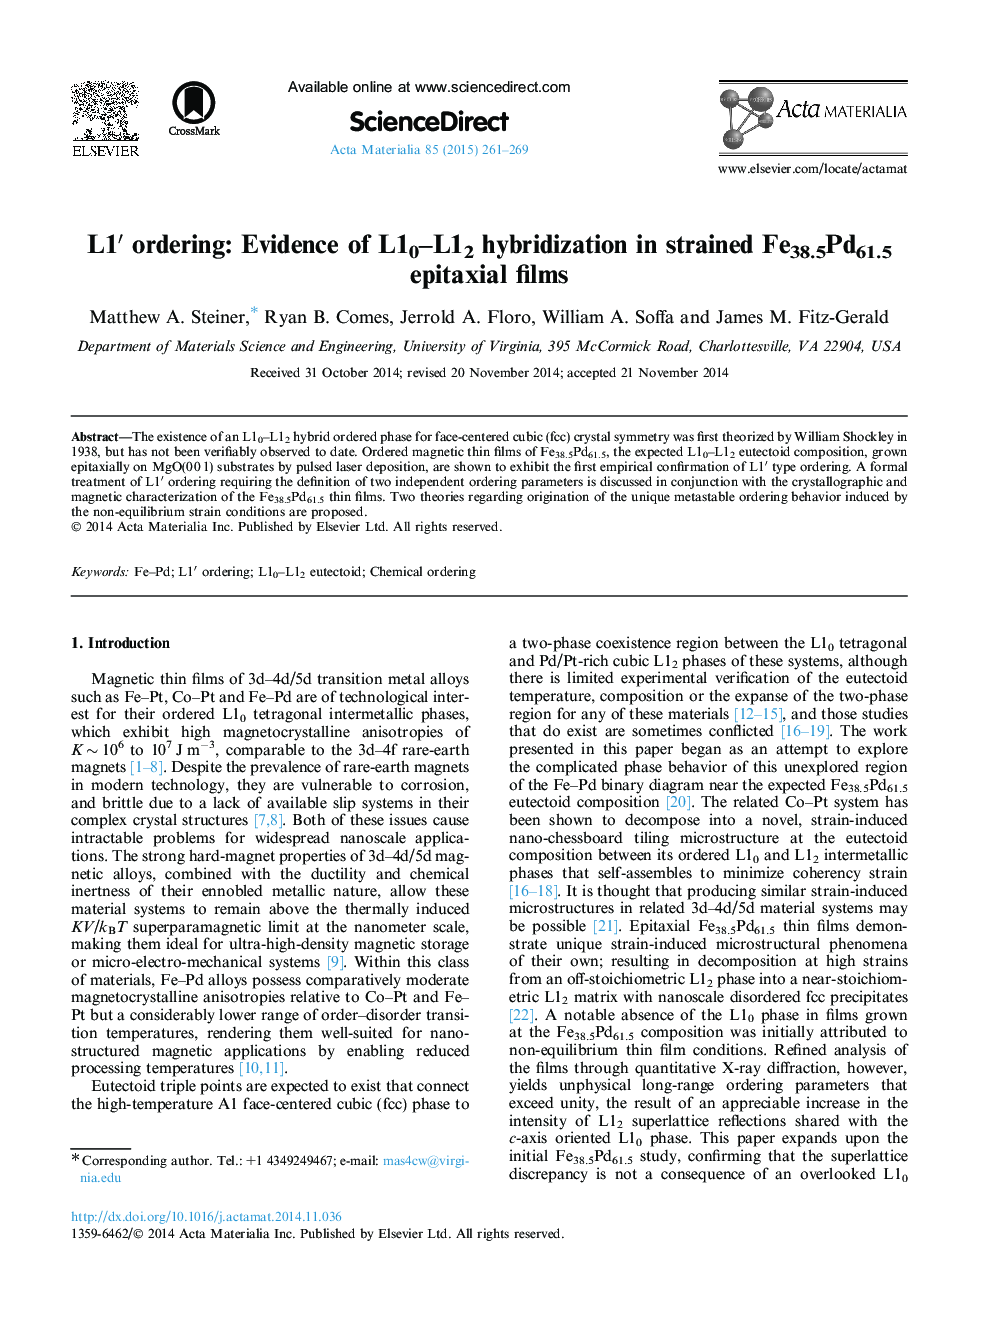 L1â² ordering: Evidence of L10-L12 hybridization in strained Fe38.5Pd61.5 epitaxial films